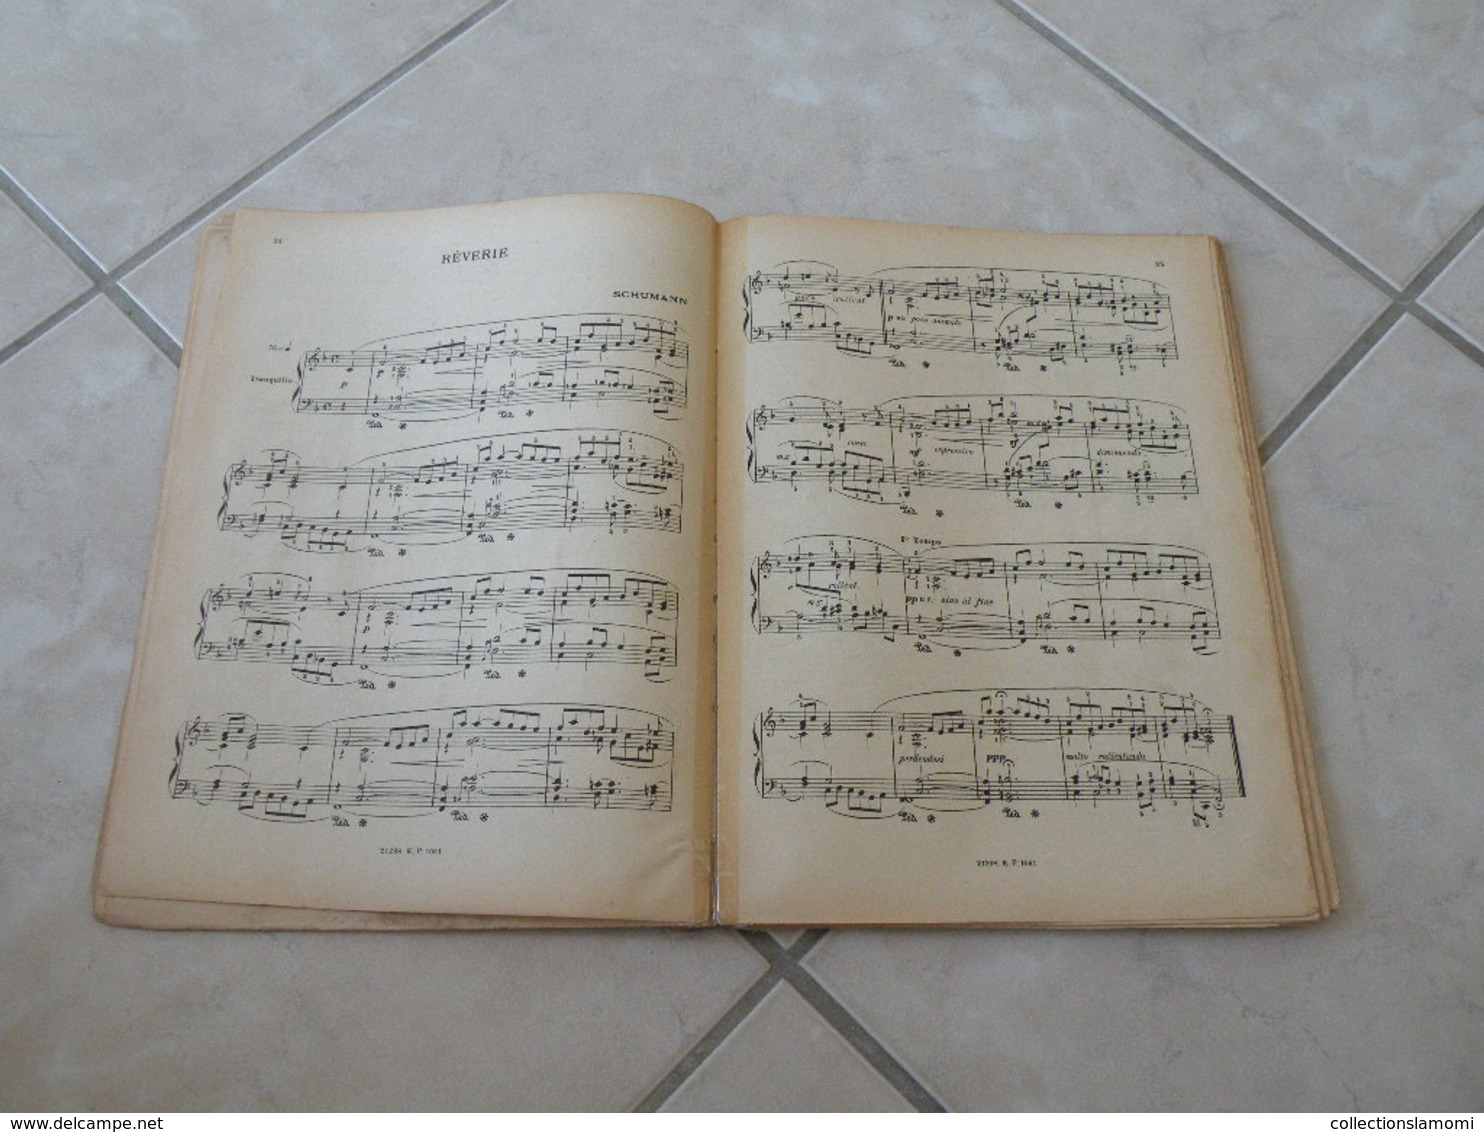 Les Classiques Favoris du Piano -(Voir les photos table des 29 titres)- Livre de Partition 139 pages